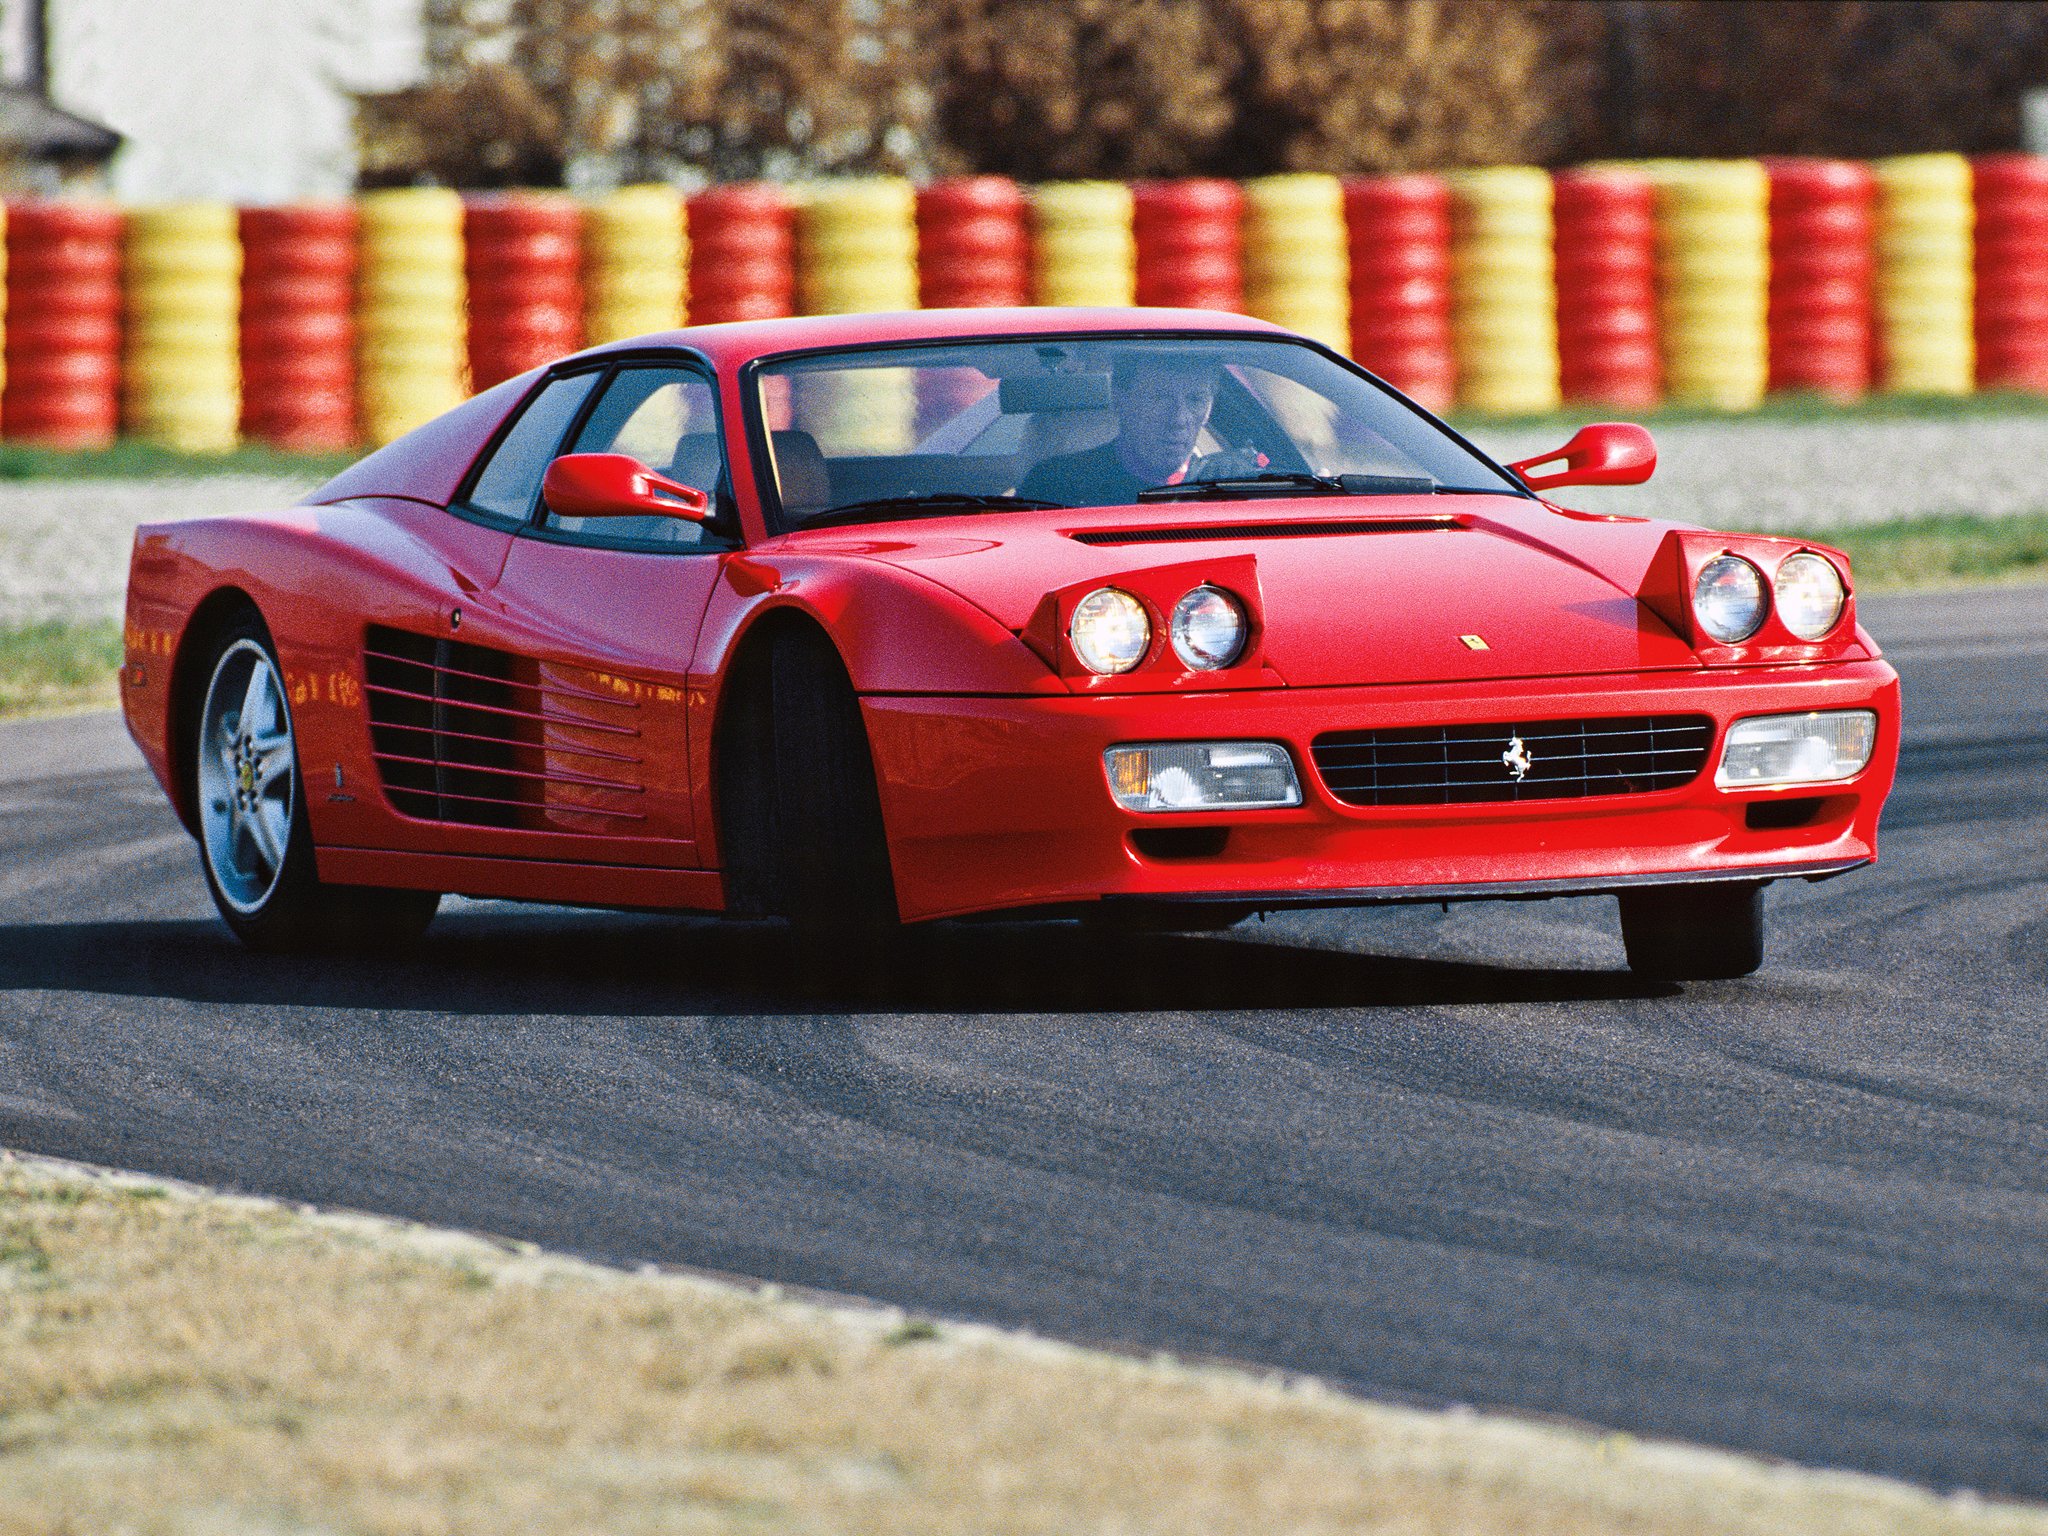 Ferrari 512. Ferrari Testarossa 512tr. 1991 Ferrari 512 Testarossa. Ferrari 512 Testarossa. Ferrari Testarossa 1992.